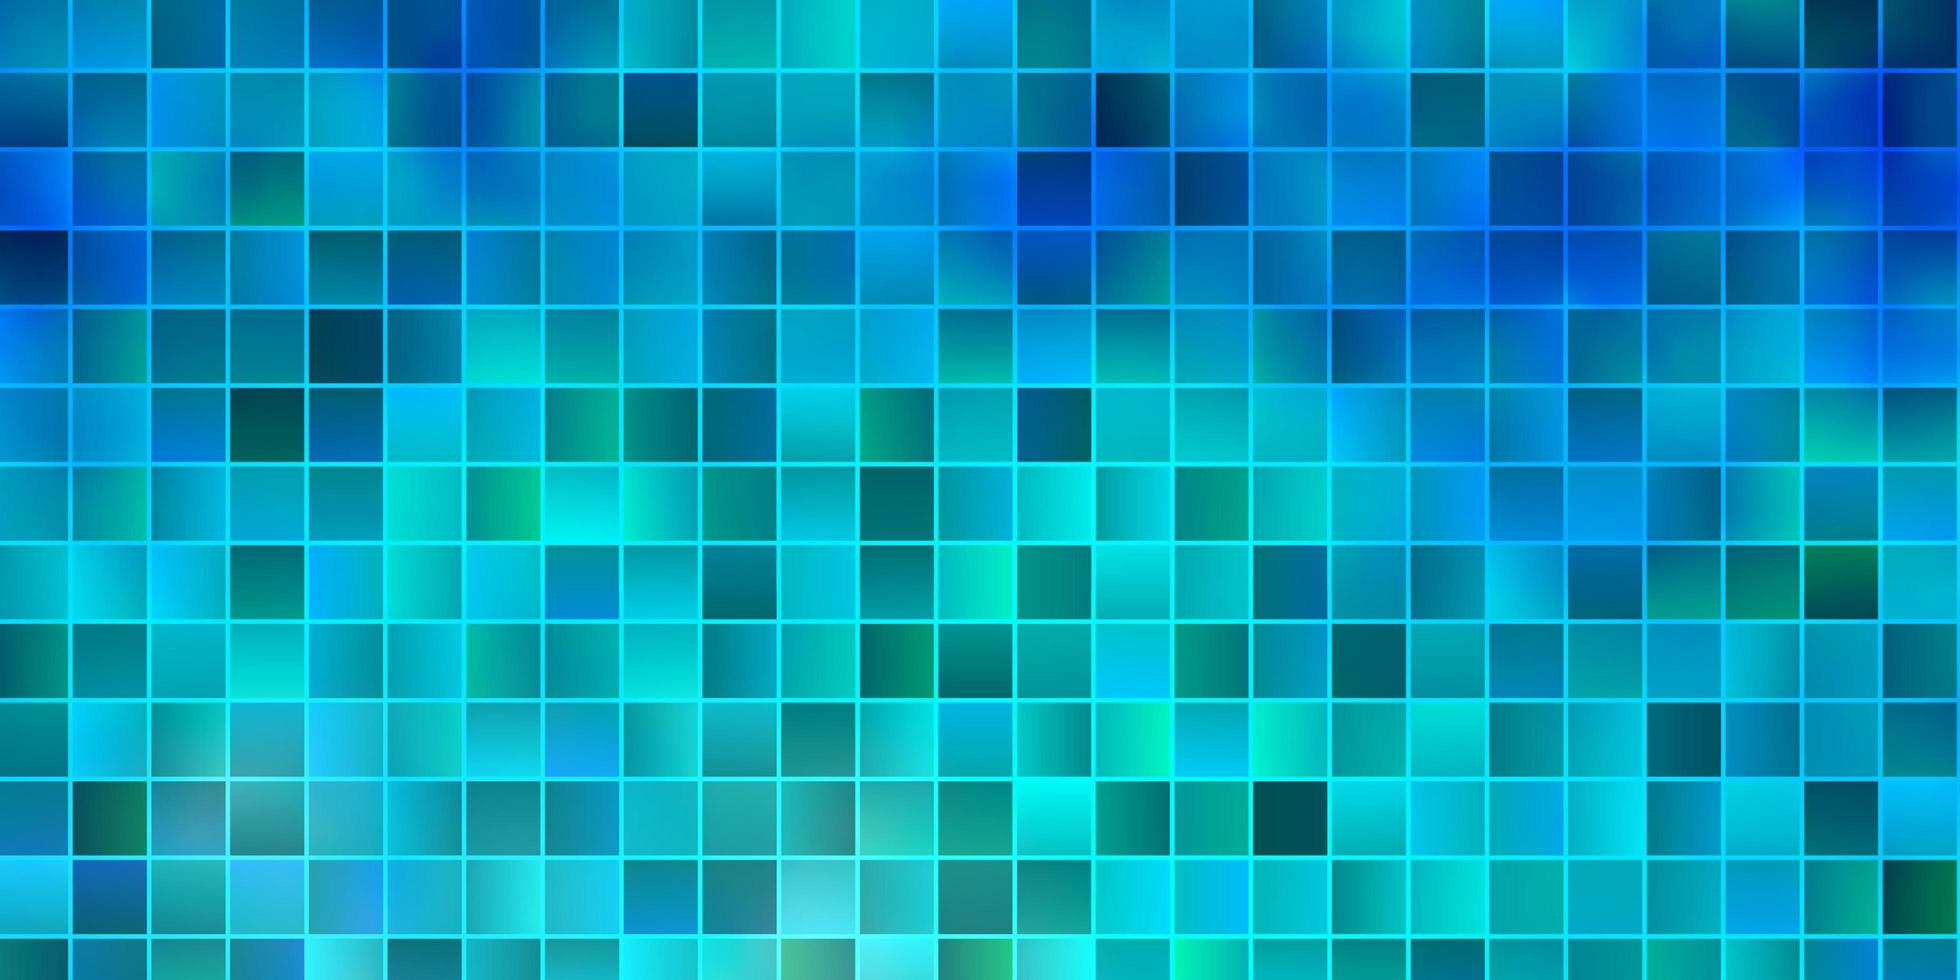 patrón de vector azul claro en estilo cuadrado